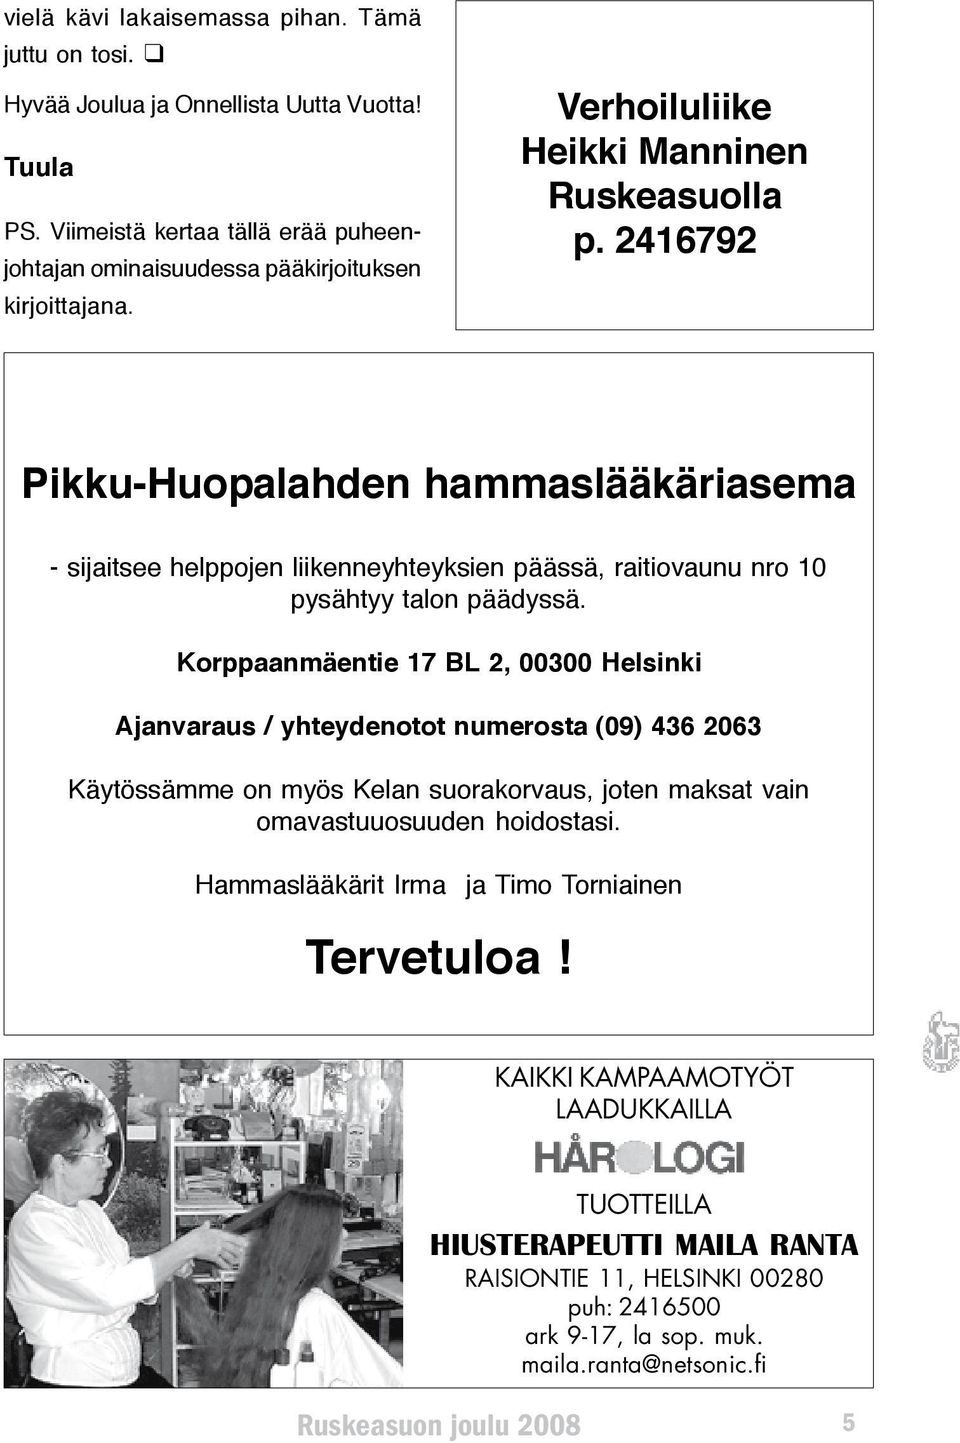 Korppaanmäentie 17 BL 2, 00300 Helsinki Ajanvaraus / yhteydenotot numerosta (09) 436 2063 Käytössämme on myös Kelan suorakorvaus, joten maksat vain omavastuuosuuden hoidostasi.